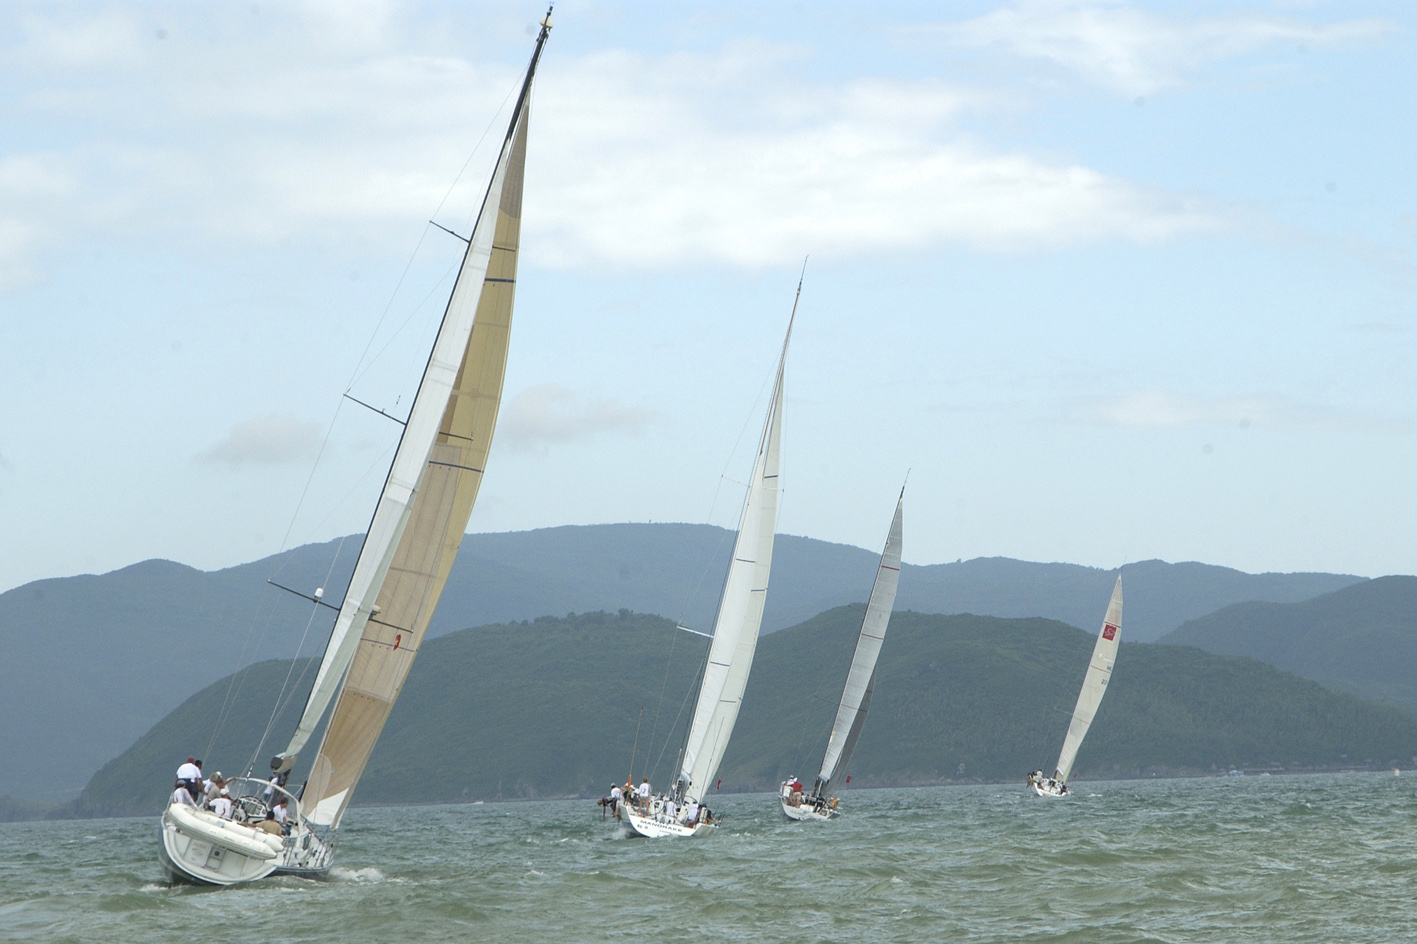 Các thuyền buồm tham gia cuộc đua từ Hong Kong đến Nha Trang chạy biểu diễn trên vịnh Nha Trang